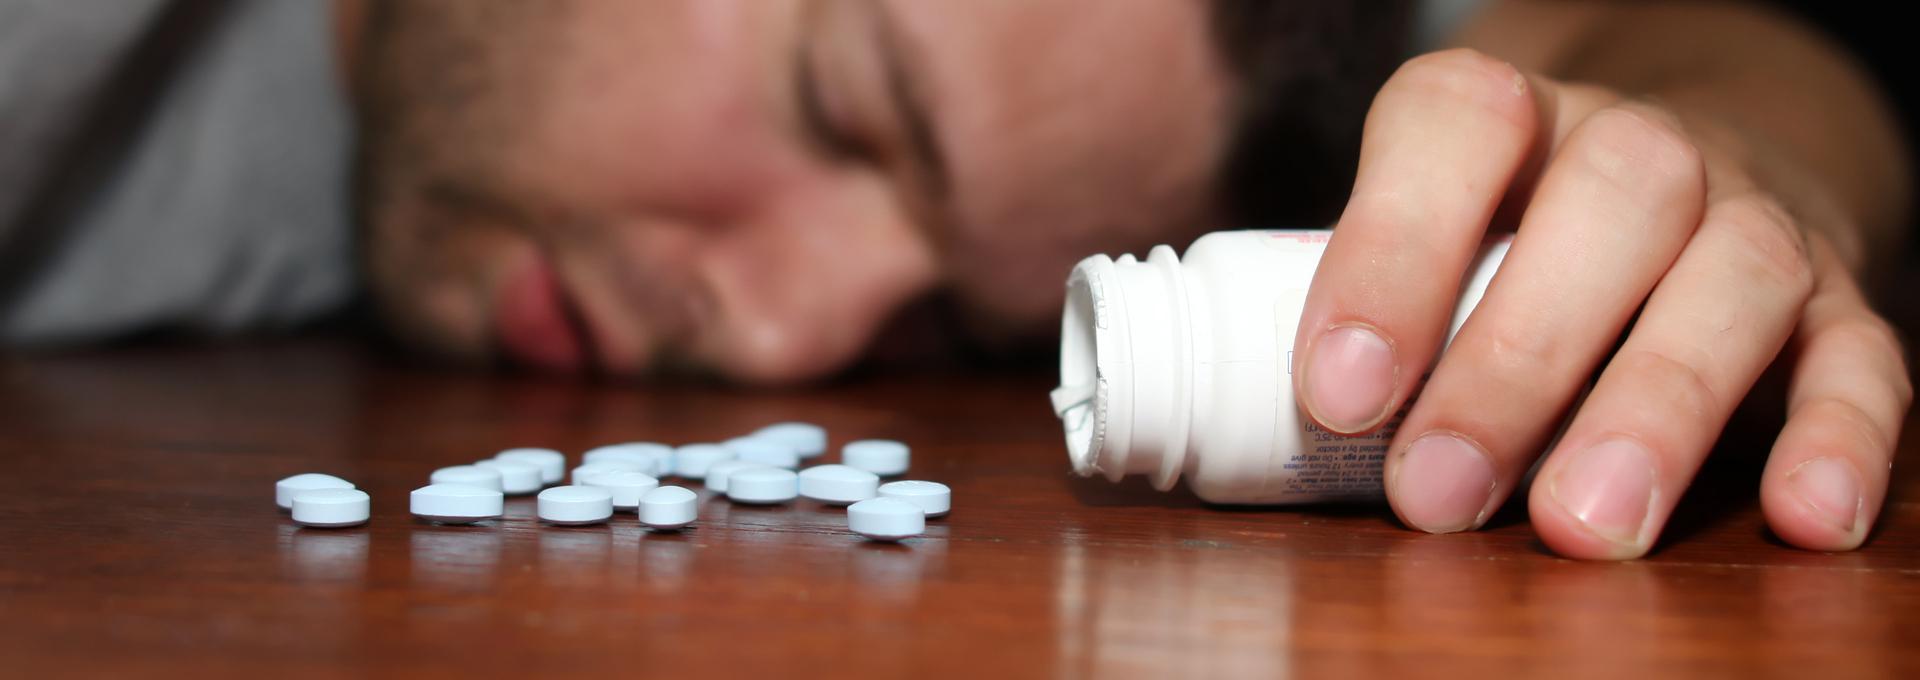 Таблетки принимать вреда. Снотворное. Отравление таблетками. Передозировка таблетками. Седативными и снотворными средствами:.